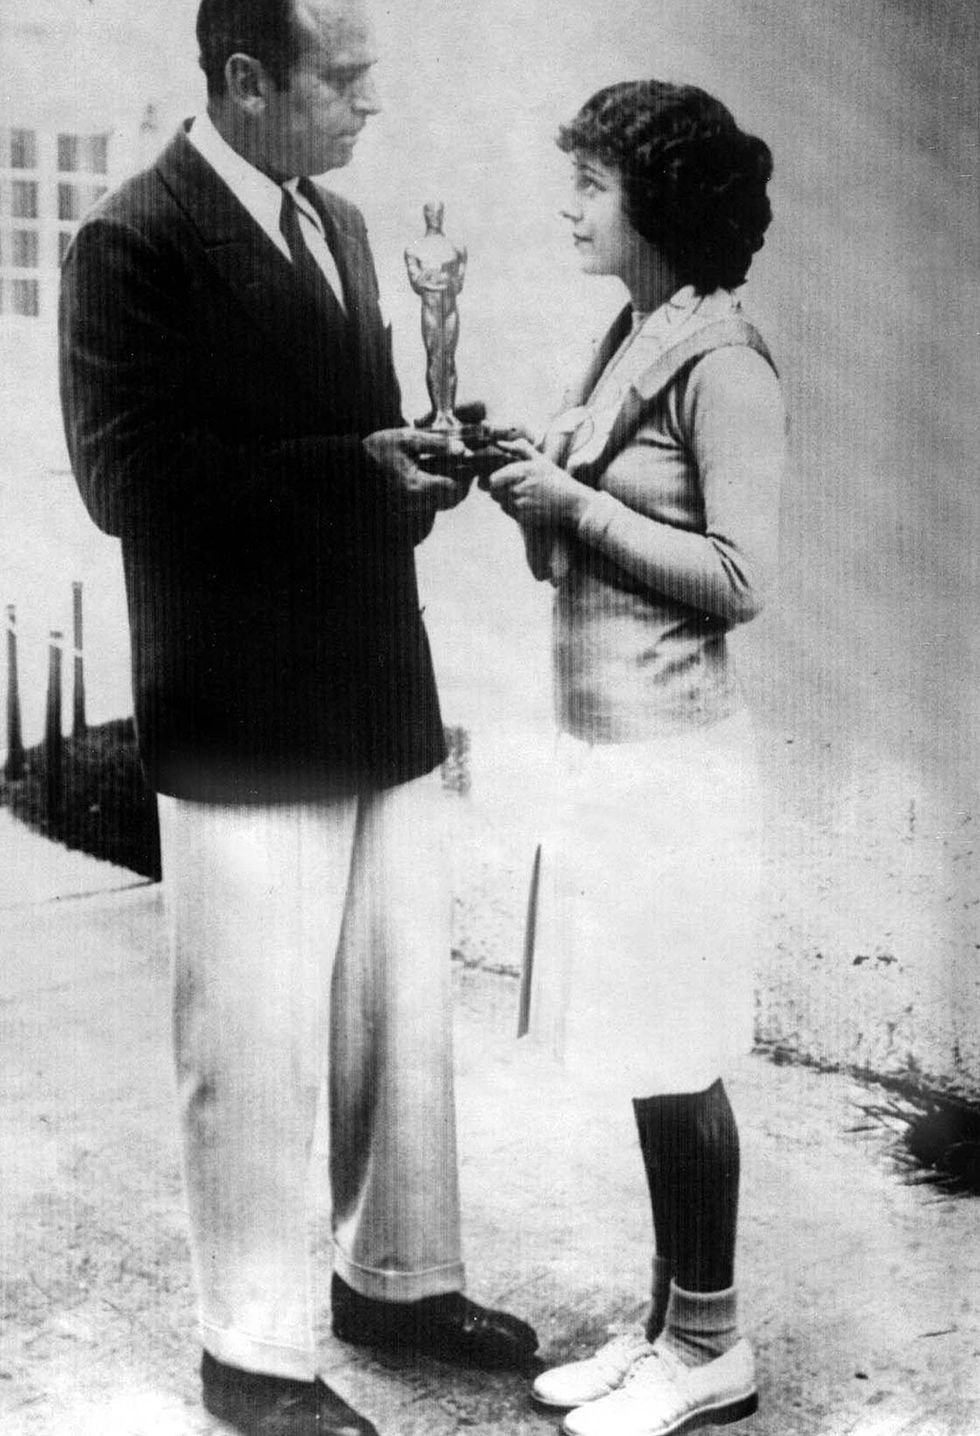 <p>Recibió el primer premio por tres películas rodadas los dos años anteriores: 'El séptimo cielo' (Frank Borzage, 1927), 'El ángel de la calle' (Frank Borzage, 1928) y 'Amanecer' (F.W. Murnau, 1927). Acudió vestida de prêt à porter.</p>